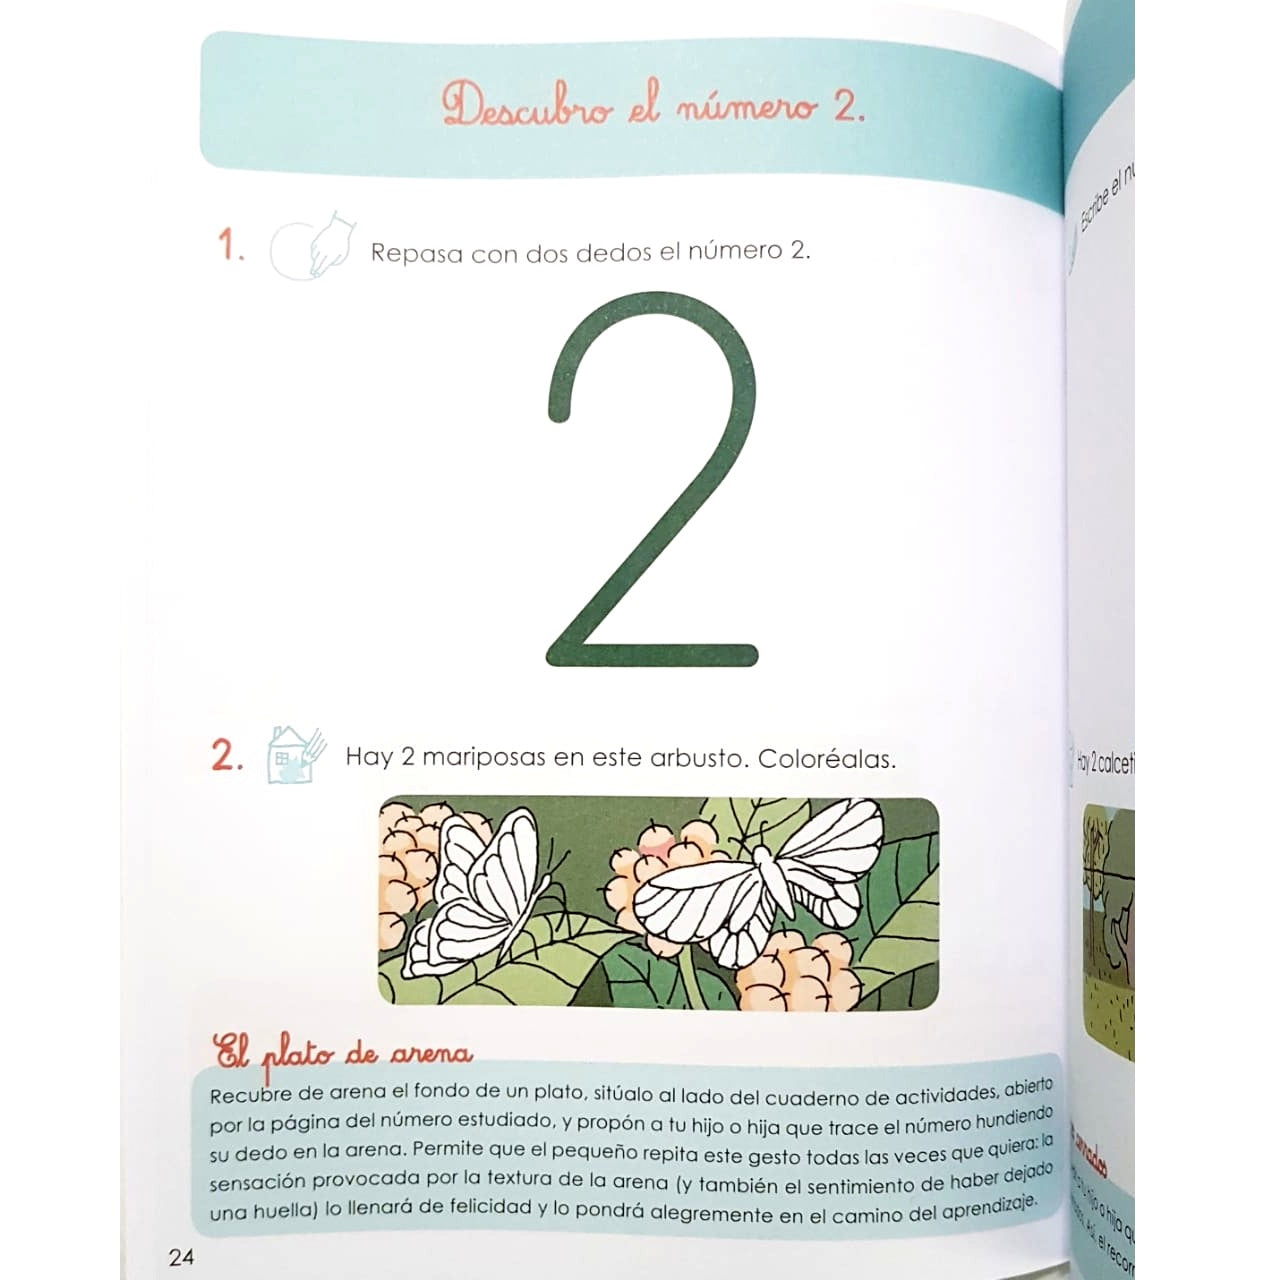 Gran cuaderno Montessori de matemáticas :: Larousse Editorial :: Larousse  :: Libros :: Dideco